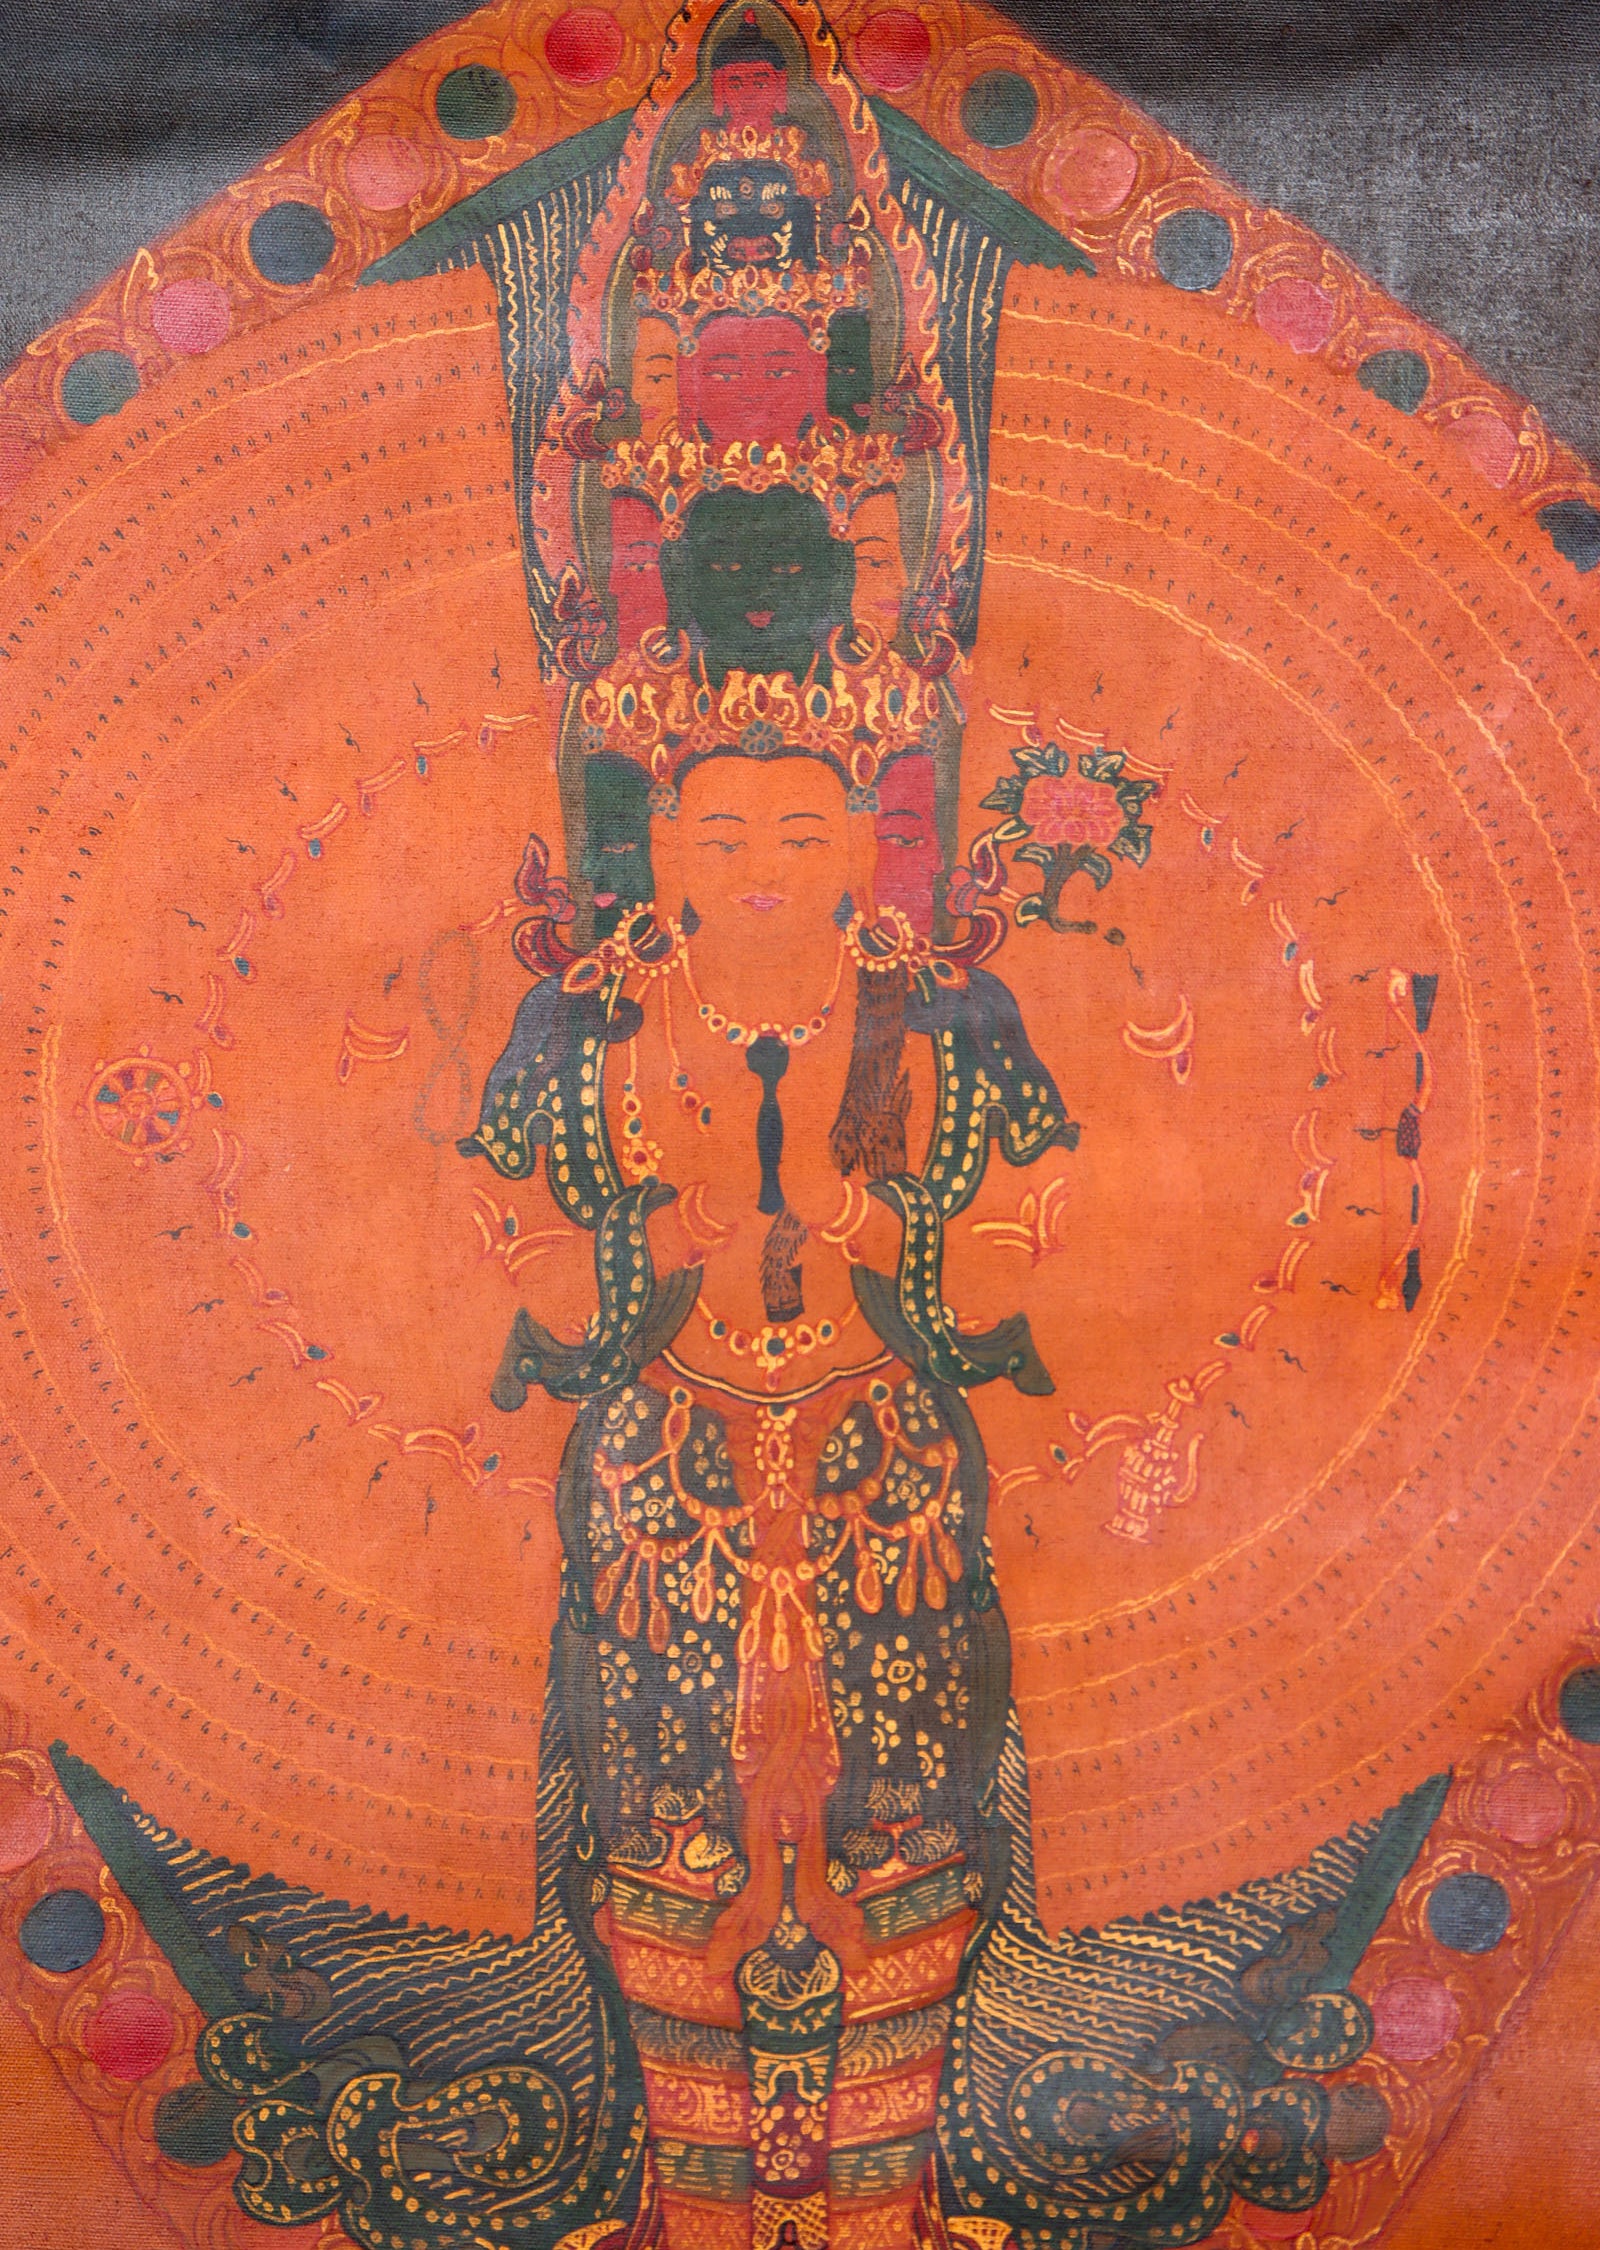 Antique Lokeshwor Thangka Painting for spiritual teaching.